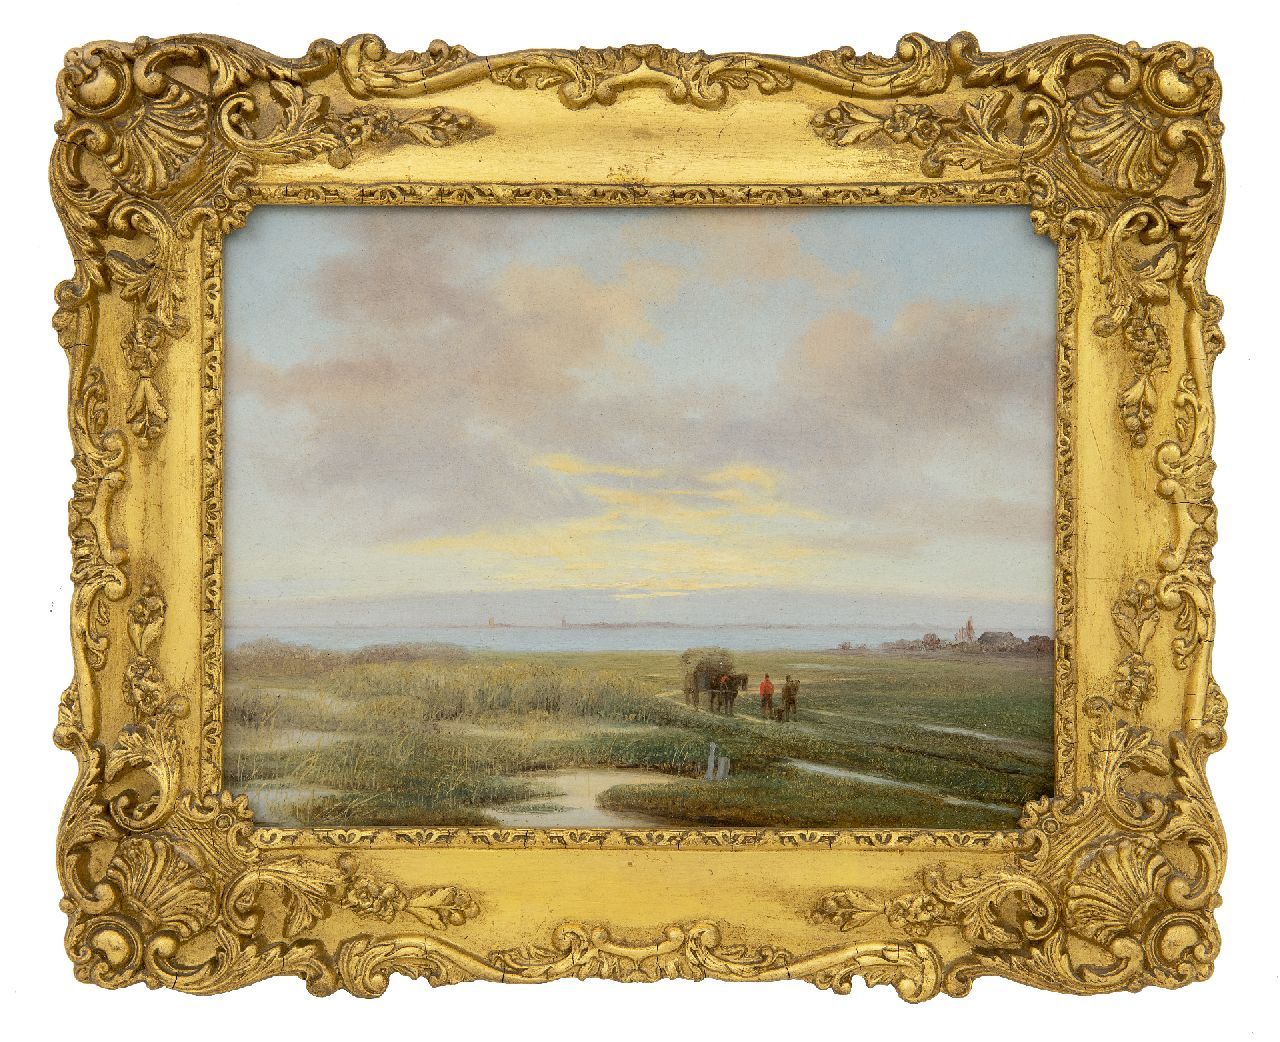 Roosenboom N.J.  | Nicolaas Johannes Roosenboom | Schilderijen te koop aangeboden | Landvolk met hooikar in weids landschap, olieverf op paneel 20,5 x 27,0 cm, gesigneerd rechtsonder